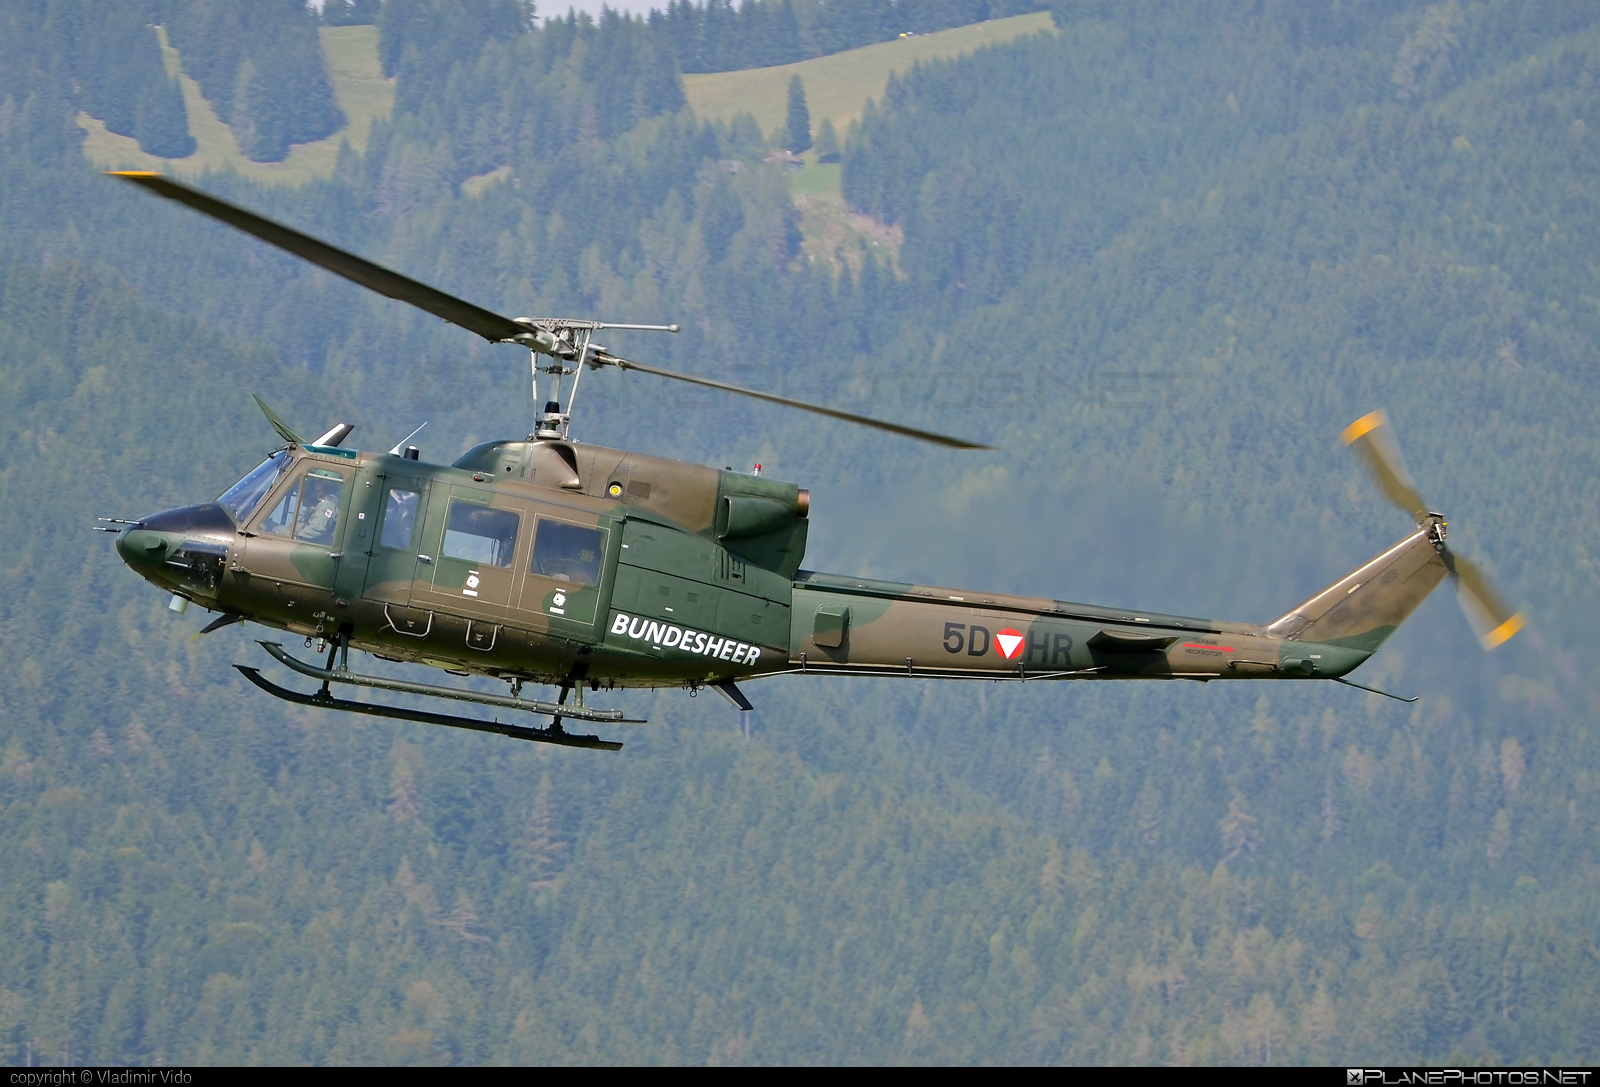 Agusta Bell AB-212 - 5D-HR operated by Österreichische Luftstreitkräfte (Austrian Air Force) #agustaBell #airpower2019 #austrianairforce